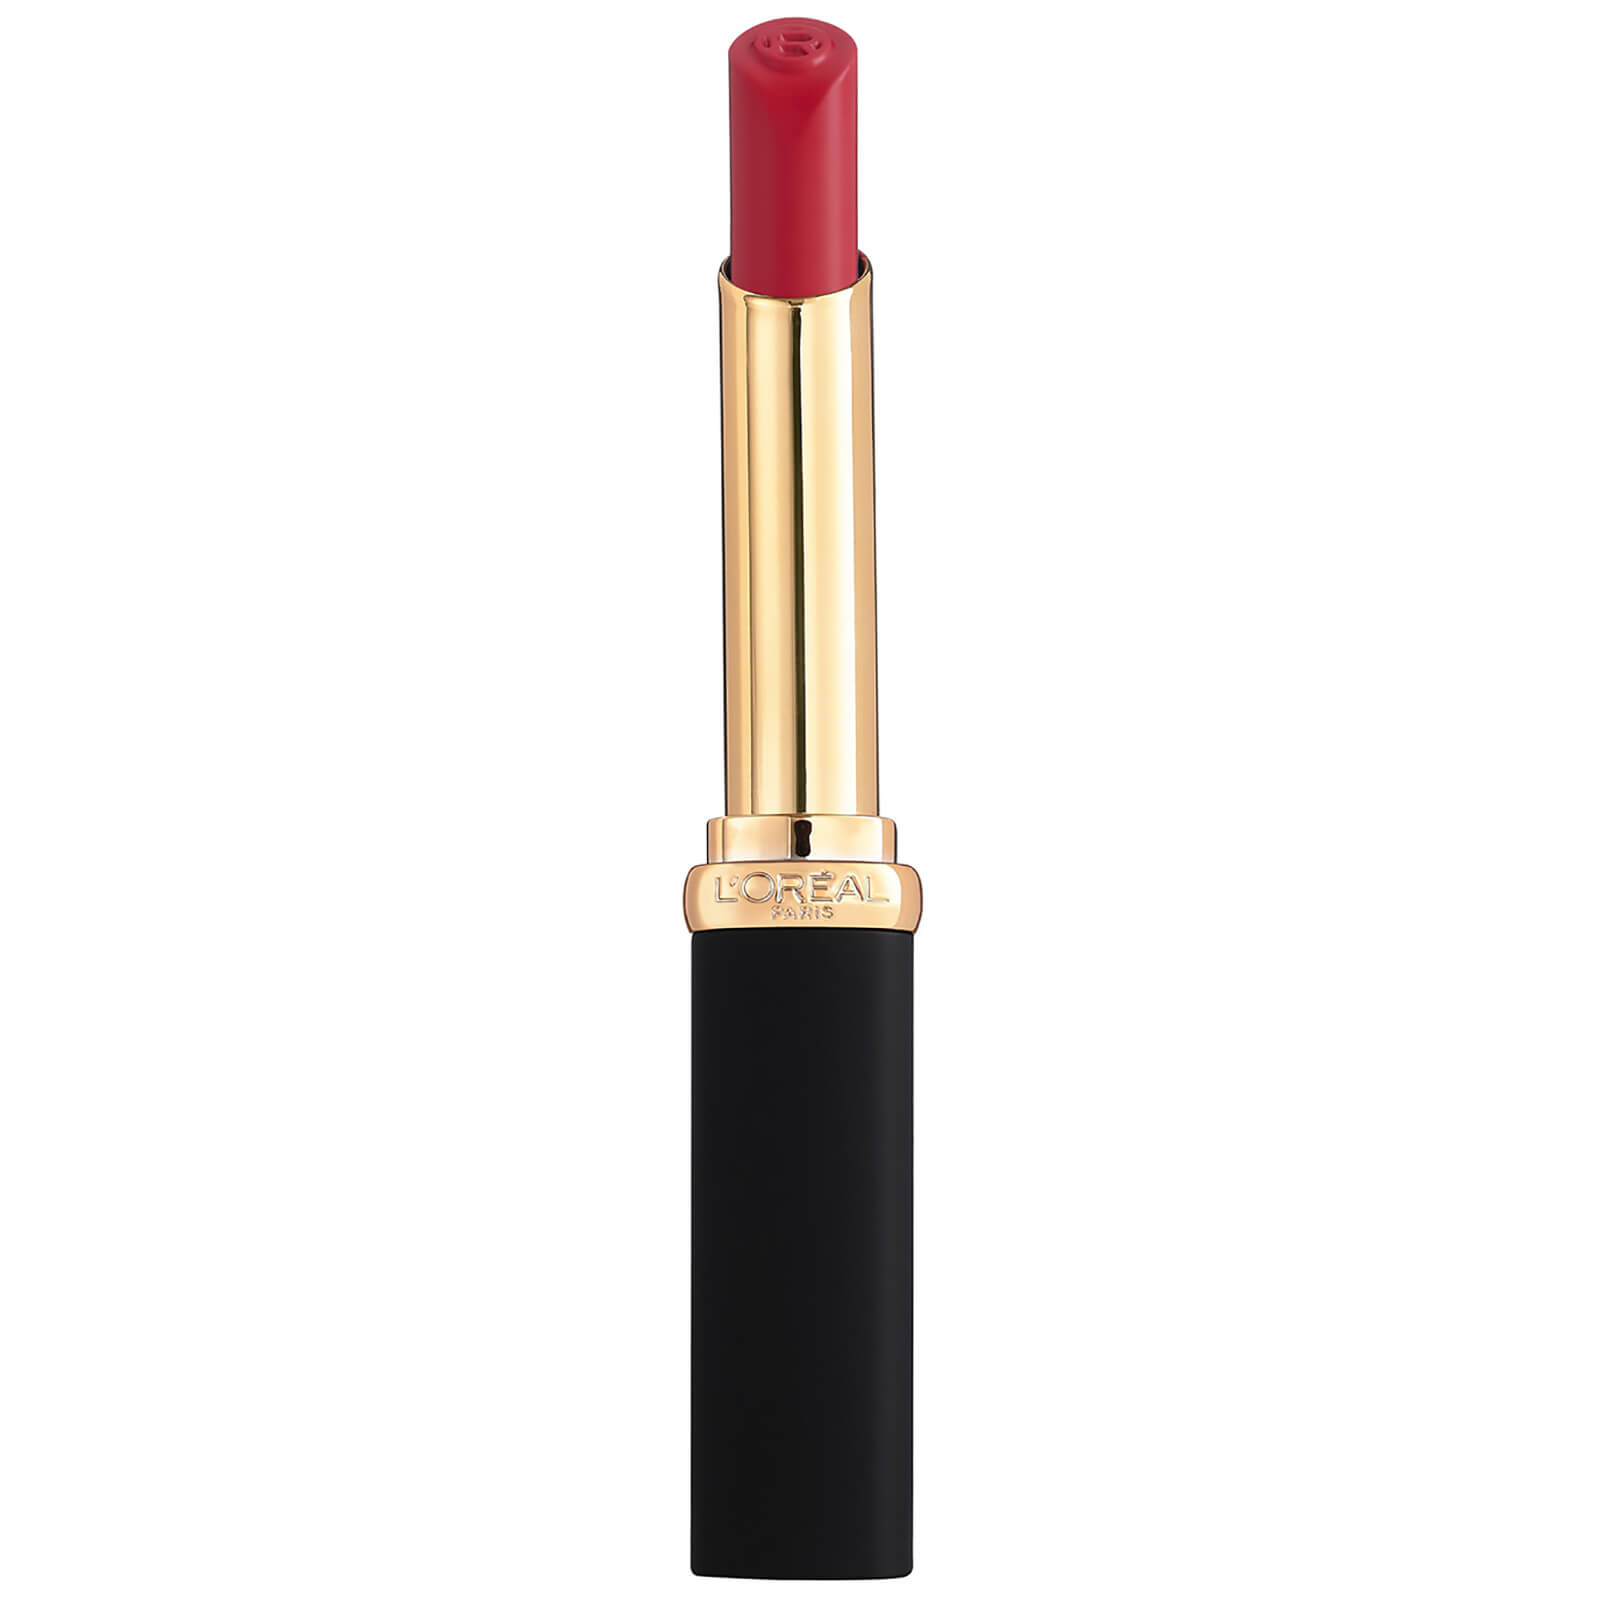 L'Oreal Paris Colour Riche Intense Volume Matte Lipstick 25g (Various Shades) - Rose Activist